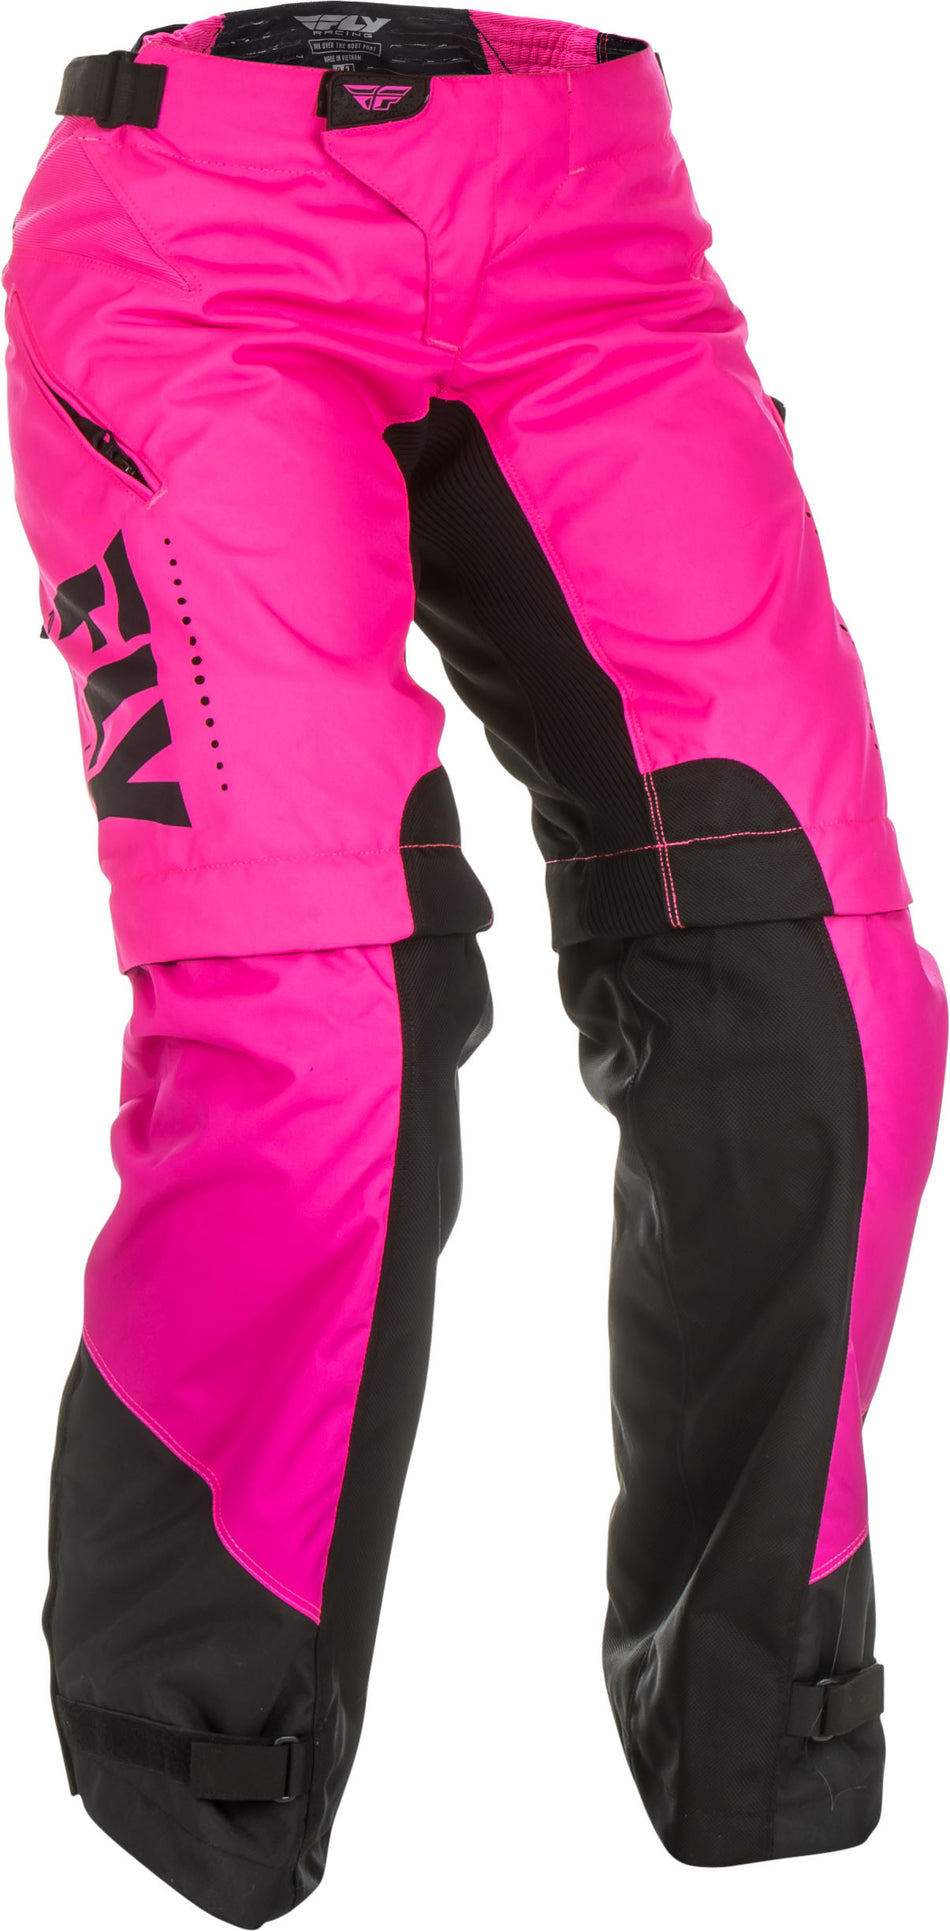 FLY RACING Women's Over Boot Pants Neon Pink/Black Sz 07/08 372-65807